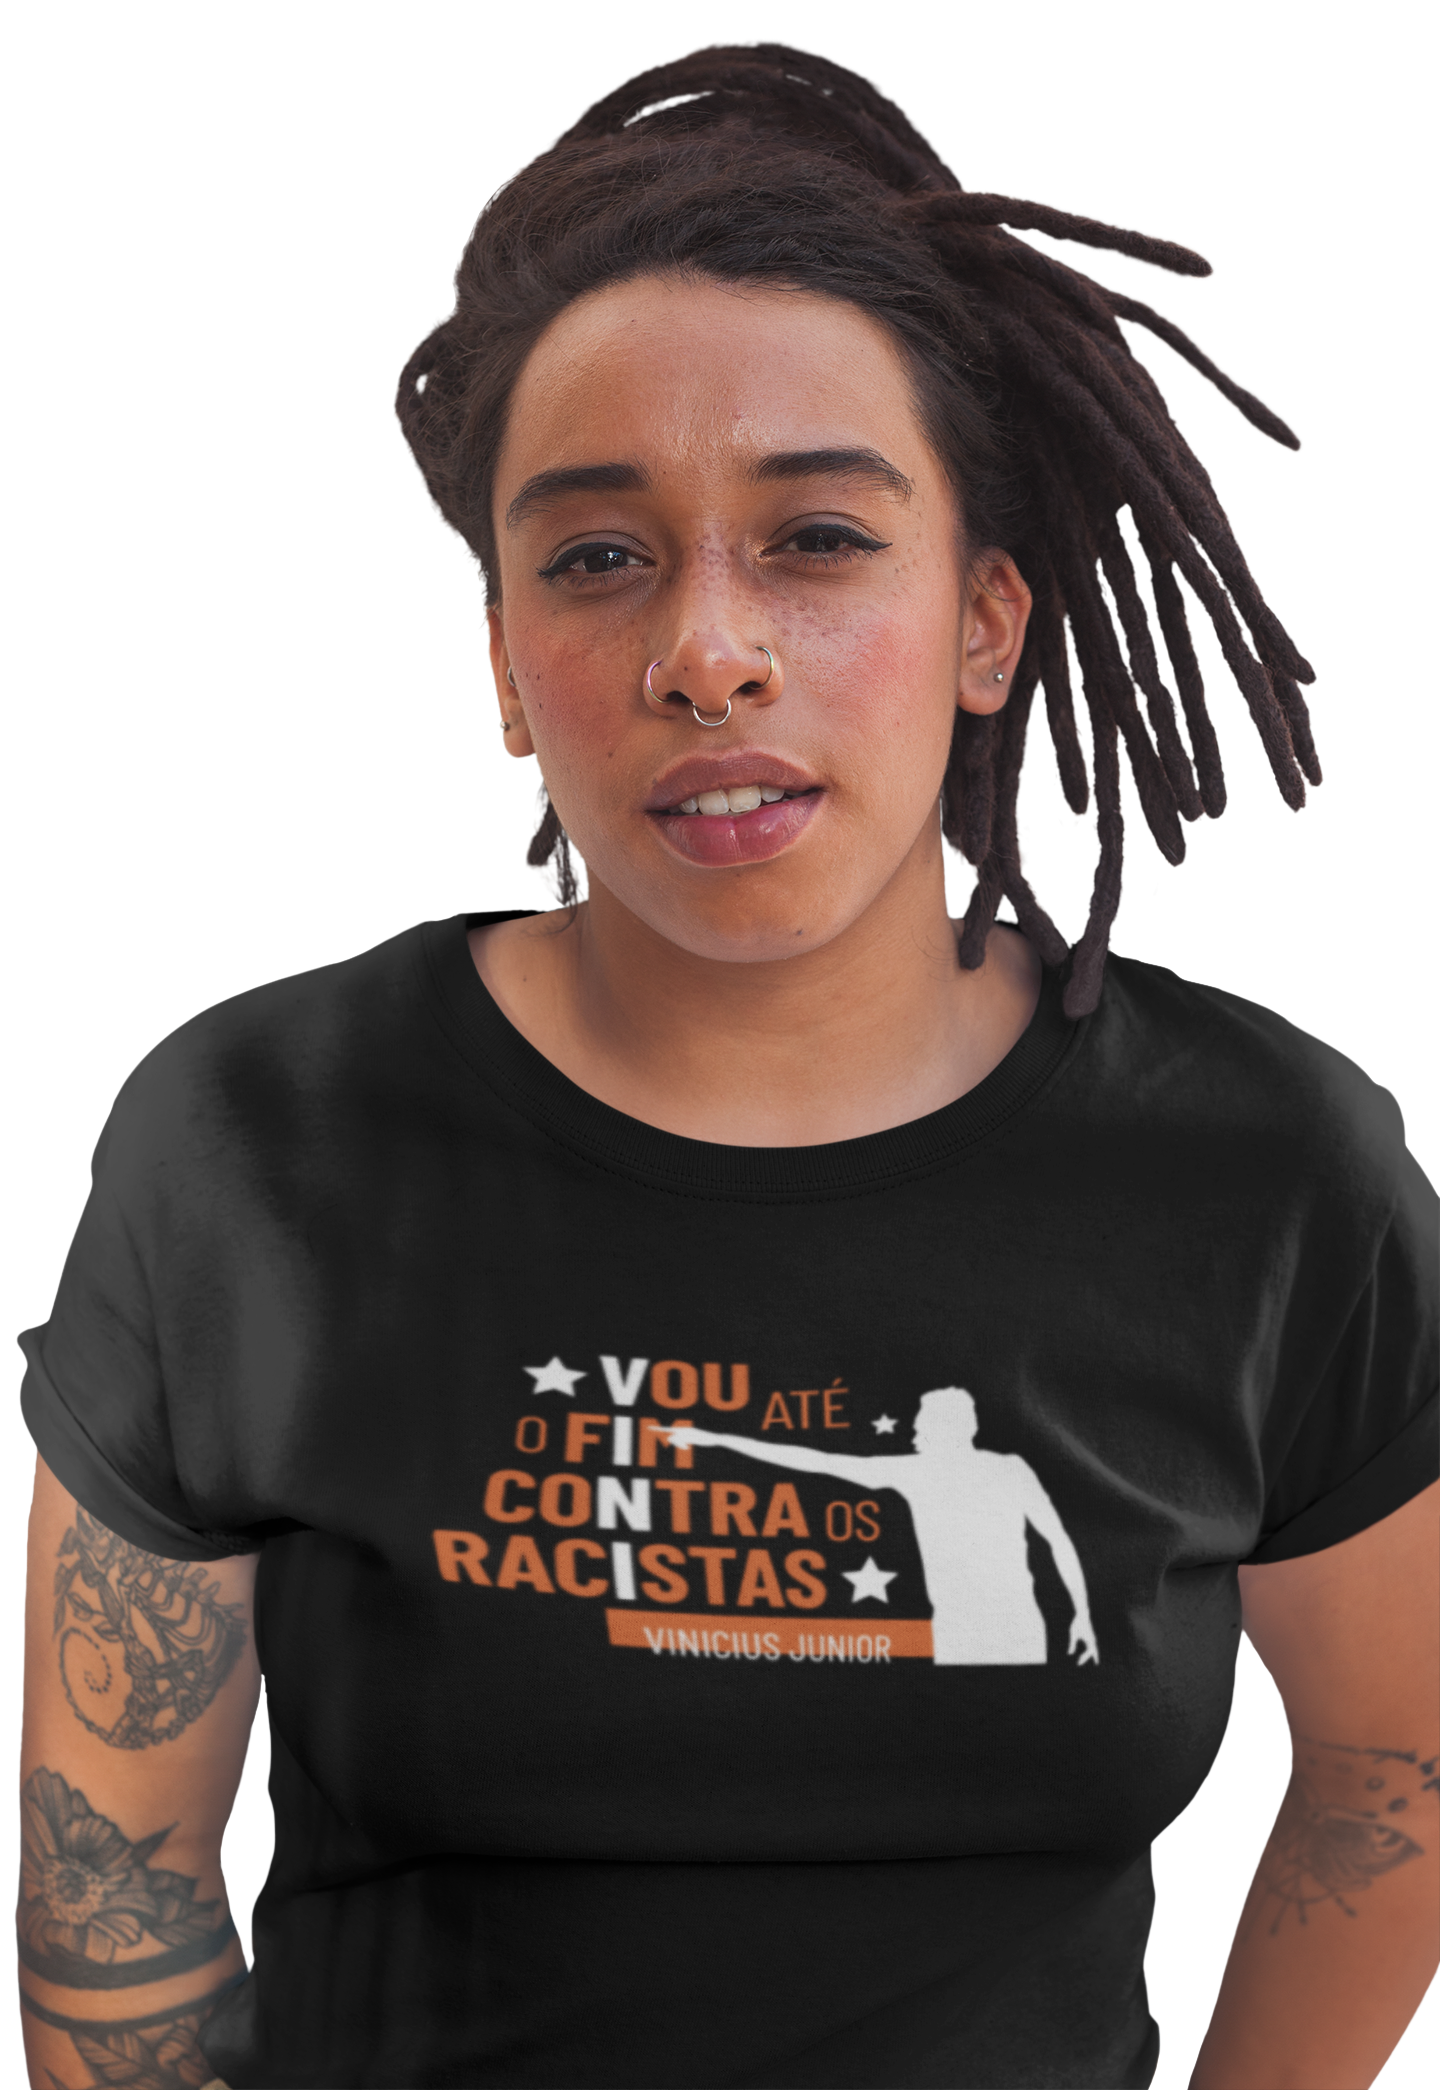 mulher negra vestindo a camiseta feminina preta com ilustração silhueta do Vini Junior e a frase "vou até o fim contra os racistas"